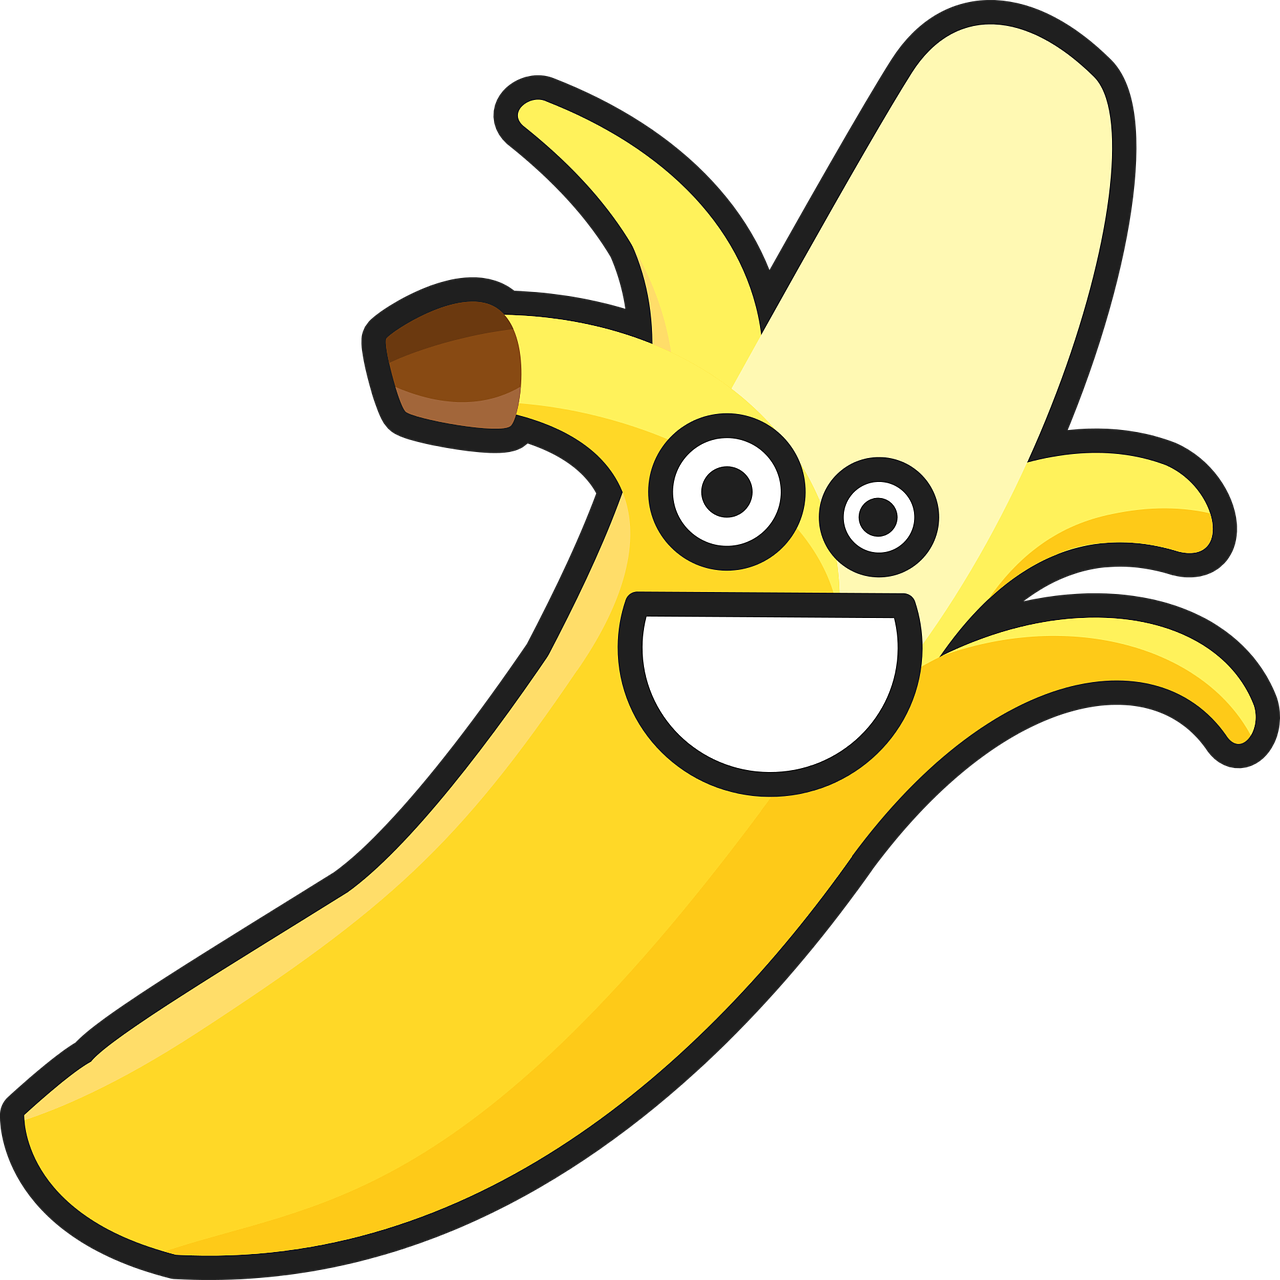 banana cartoon cheer free photo